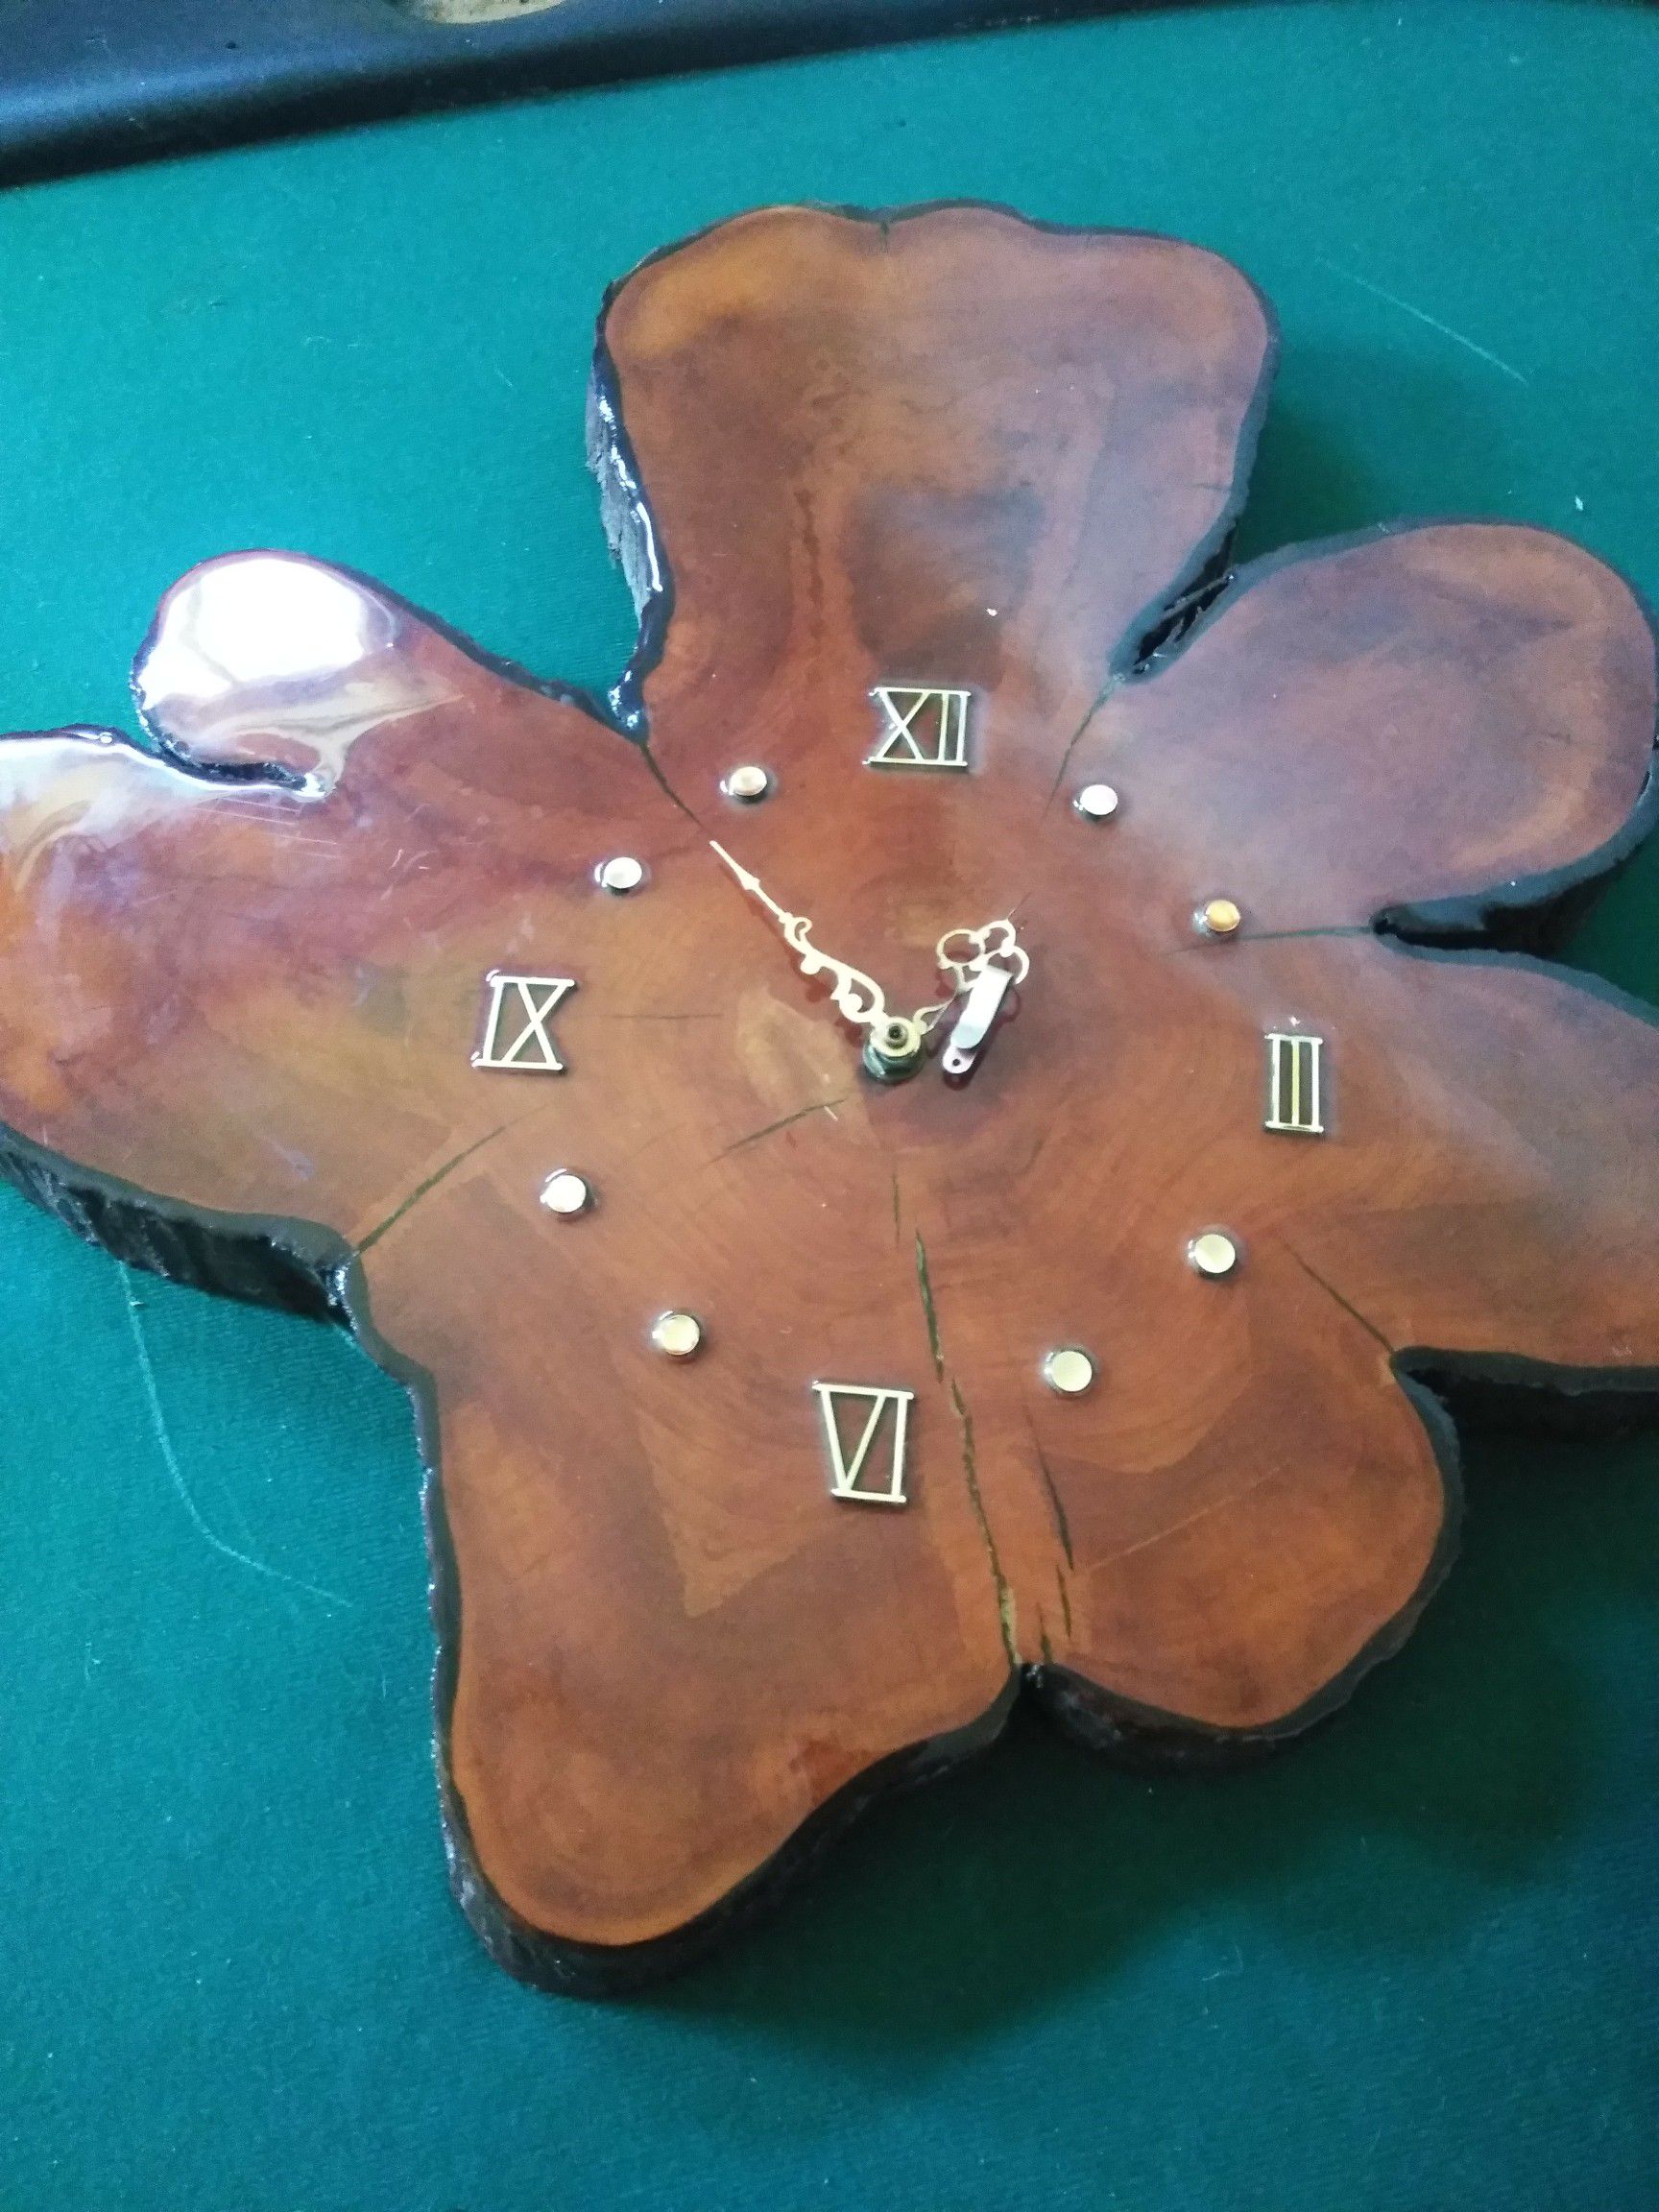 Antique Wood Clock